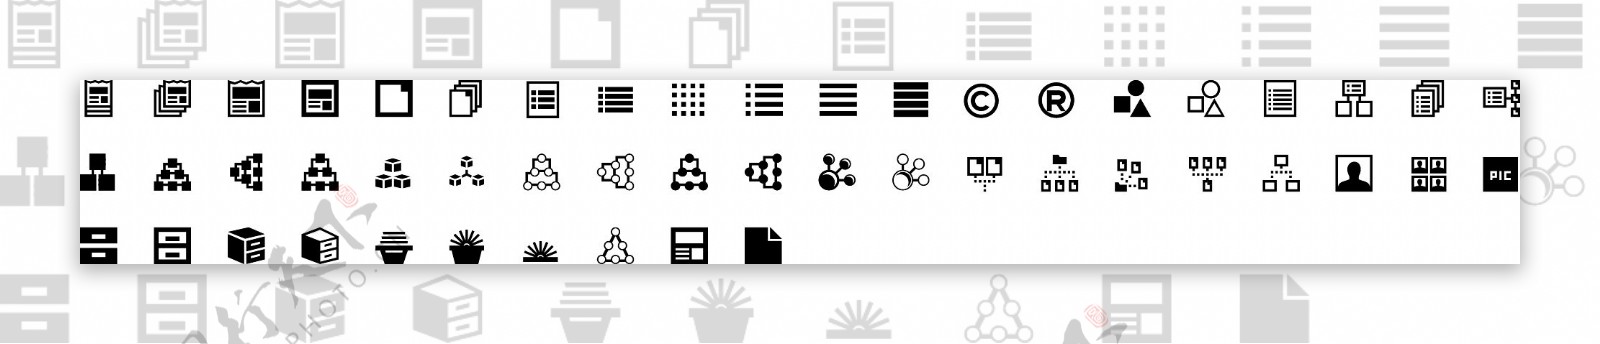 组织icon矢量图标素材